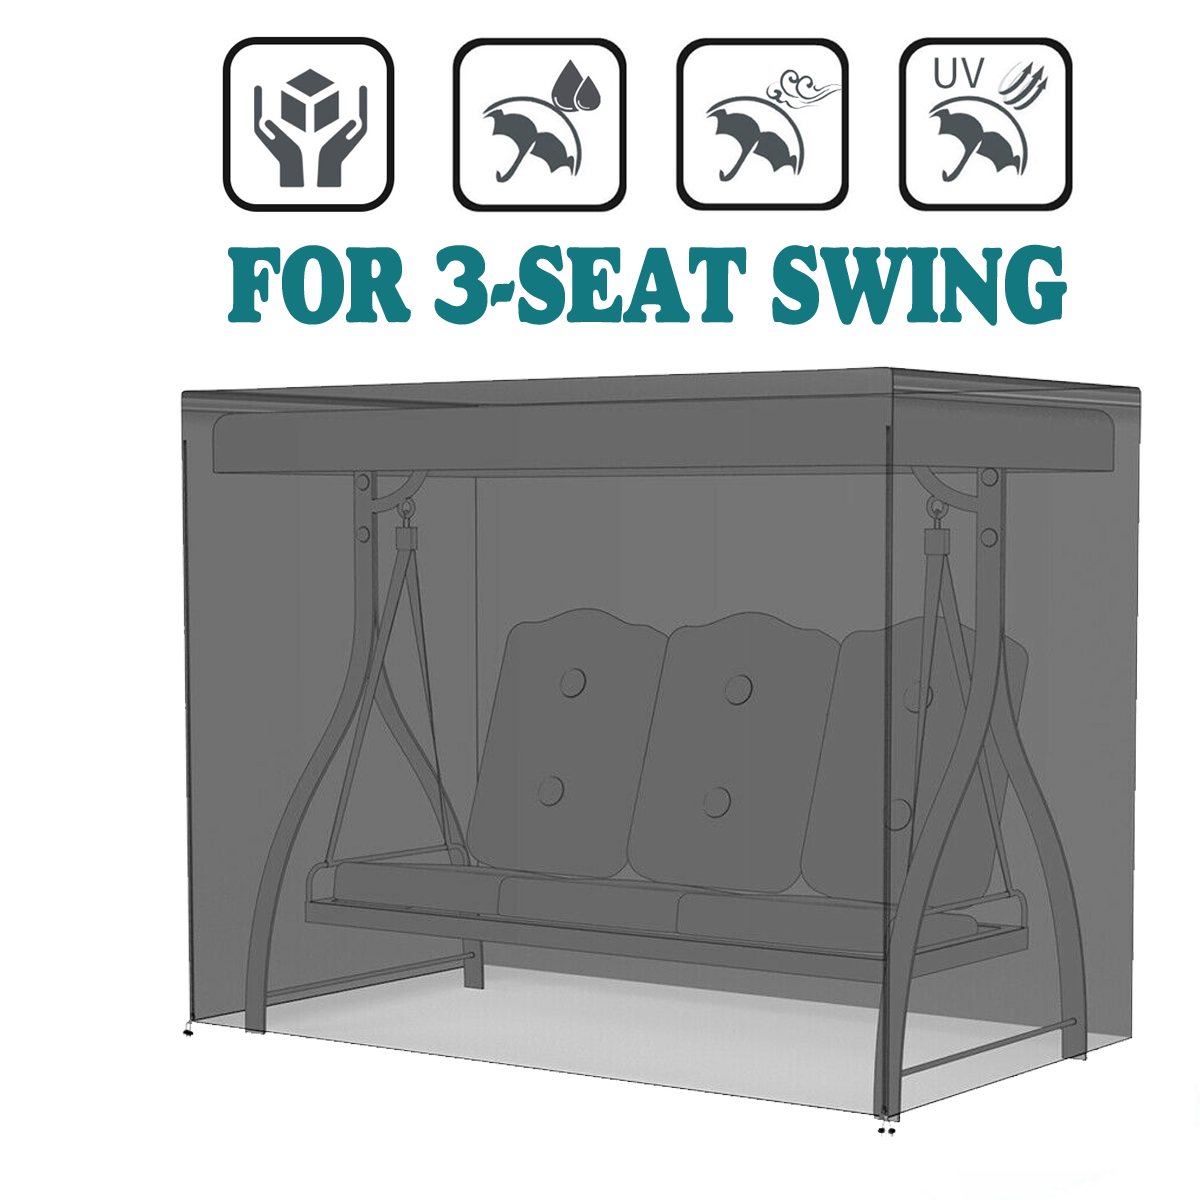 Furniture Waterproof Cover Swing Hammock Table Dustproof UV Protector Outdoor 3